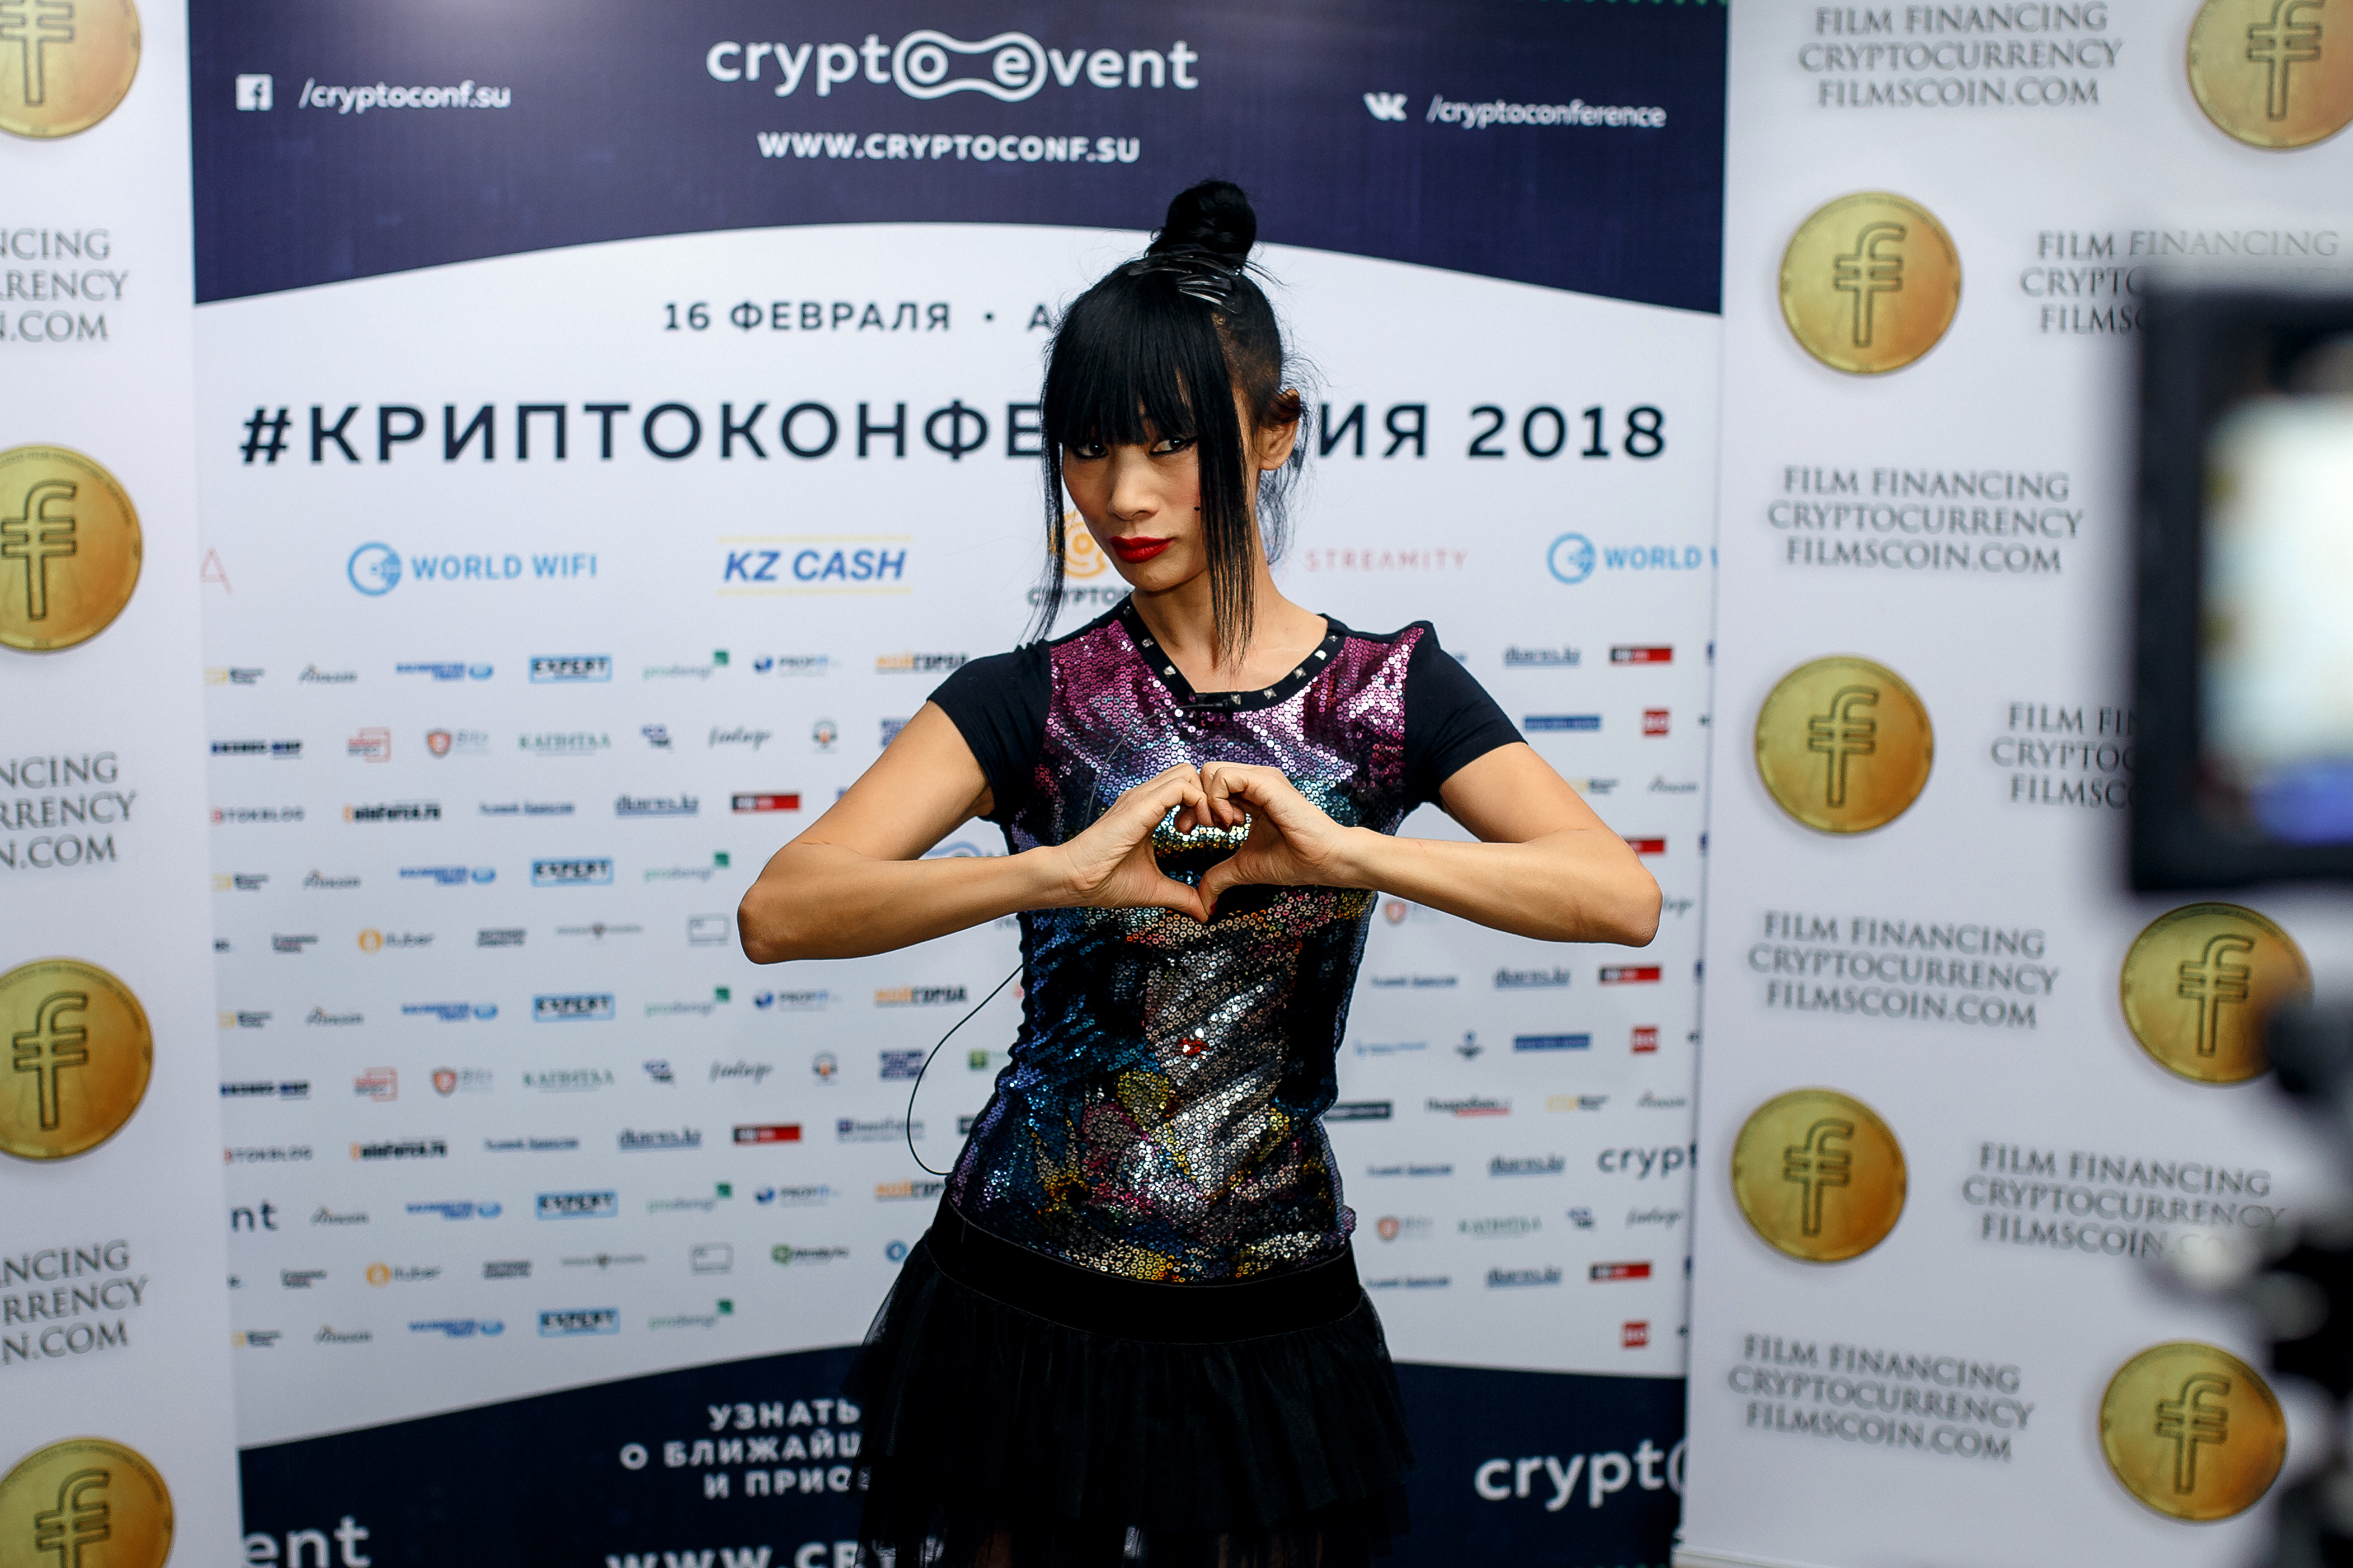 Голливудские звезды покорили блокчейн-сообщество Казахстана